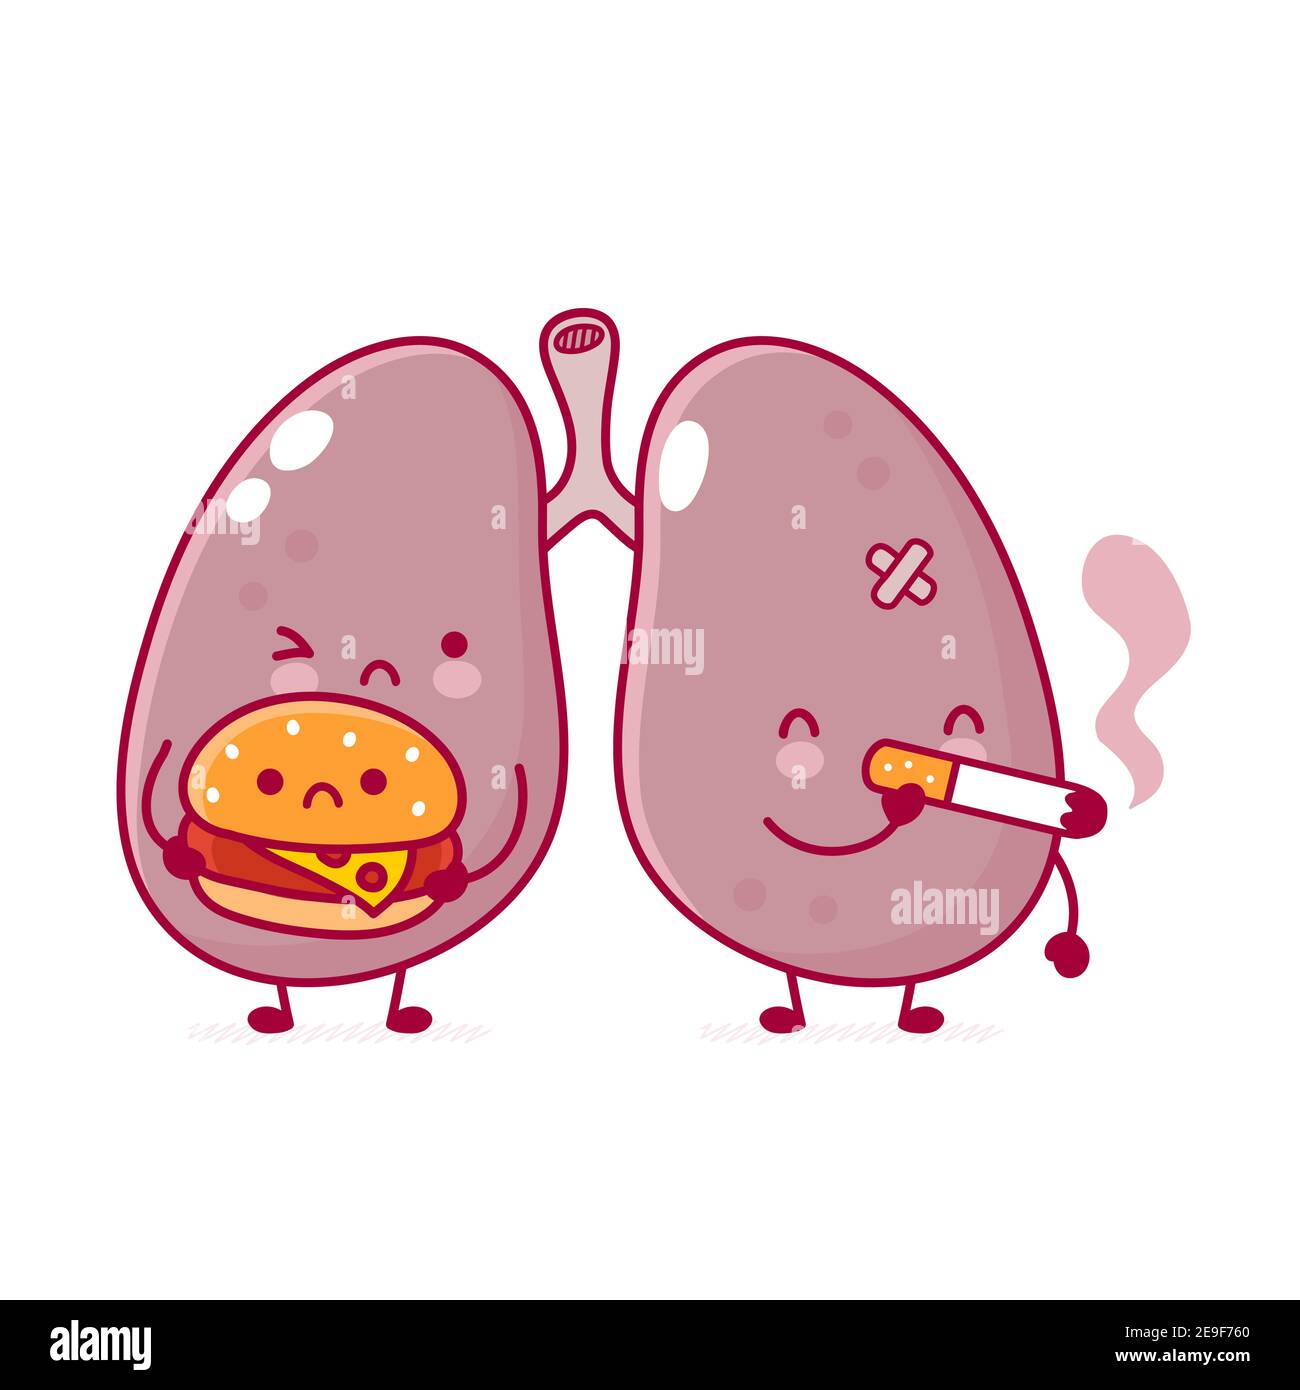 Lindo órgano de los pulmones humanos enfermo con hamburguesa y cigarrillo.  Vector línea plana dibujos animados kawaii personaje ilustración icono.  Aislado sobre fondo blanco. Concepto de carácter de órgano de los pulmones